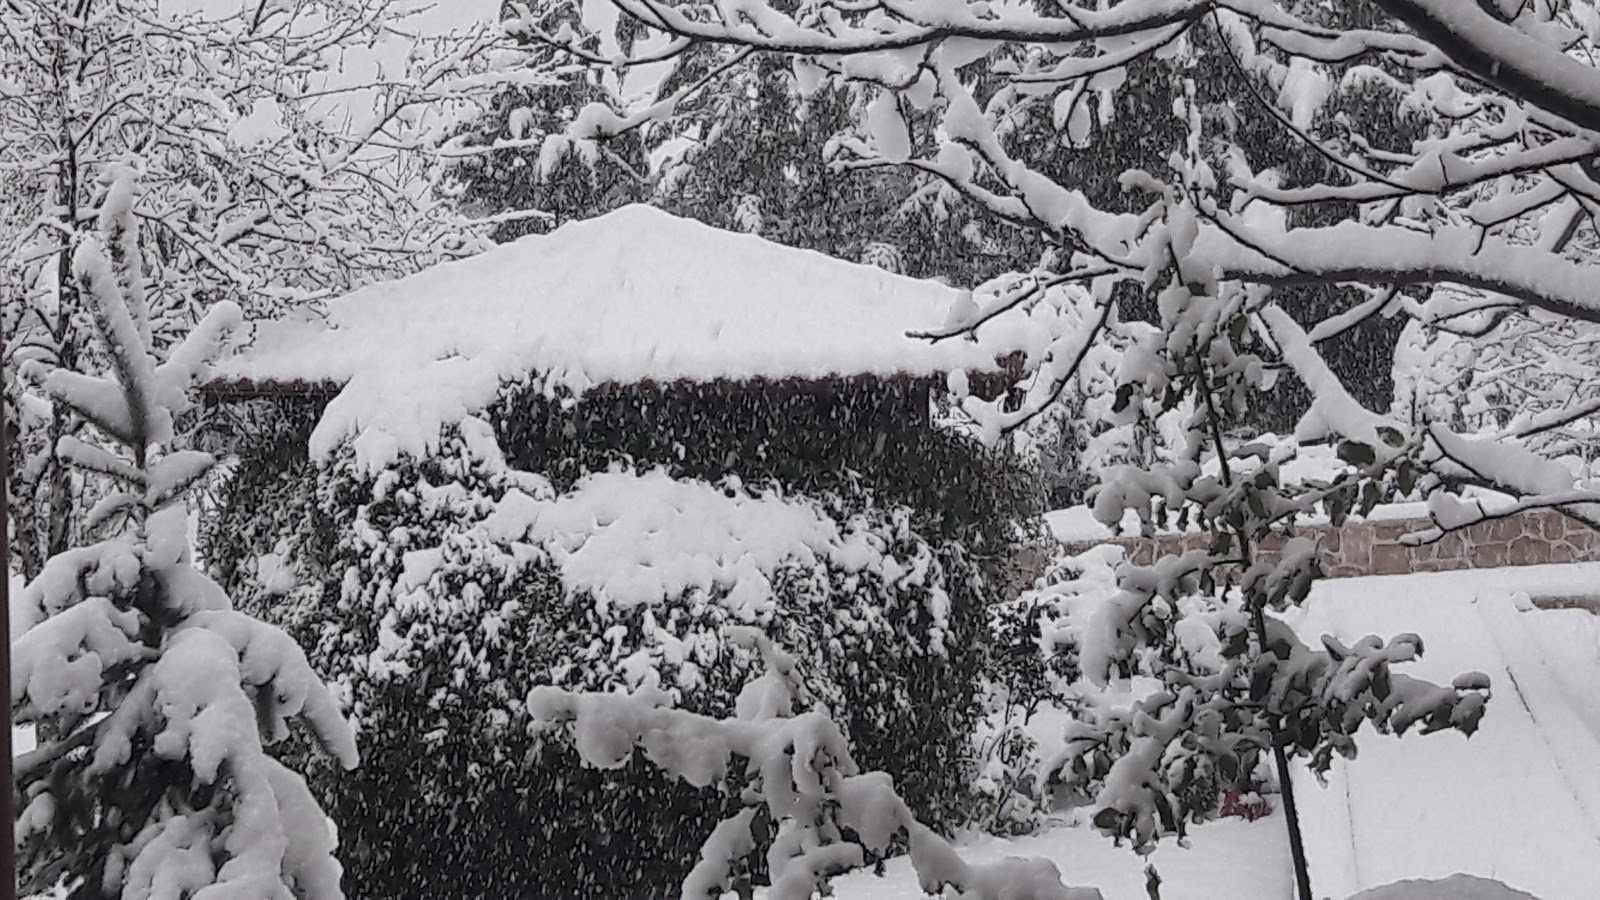 Σήμερα: Το Παλαιοχώρι Καβάλας (που βρίσκεται στις πλαγιές του όρους Παγγαίου), «βουλιάζει» στο πυκνό χιόνι. (Video: Π. Καρανίκας)